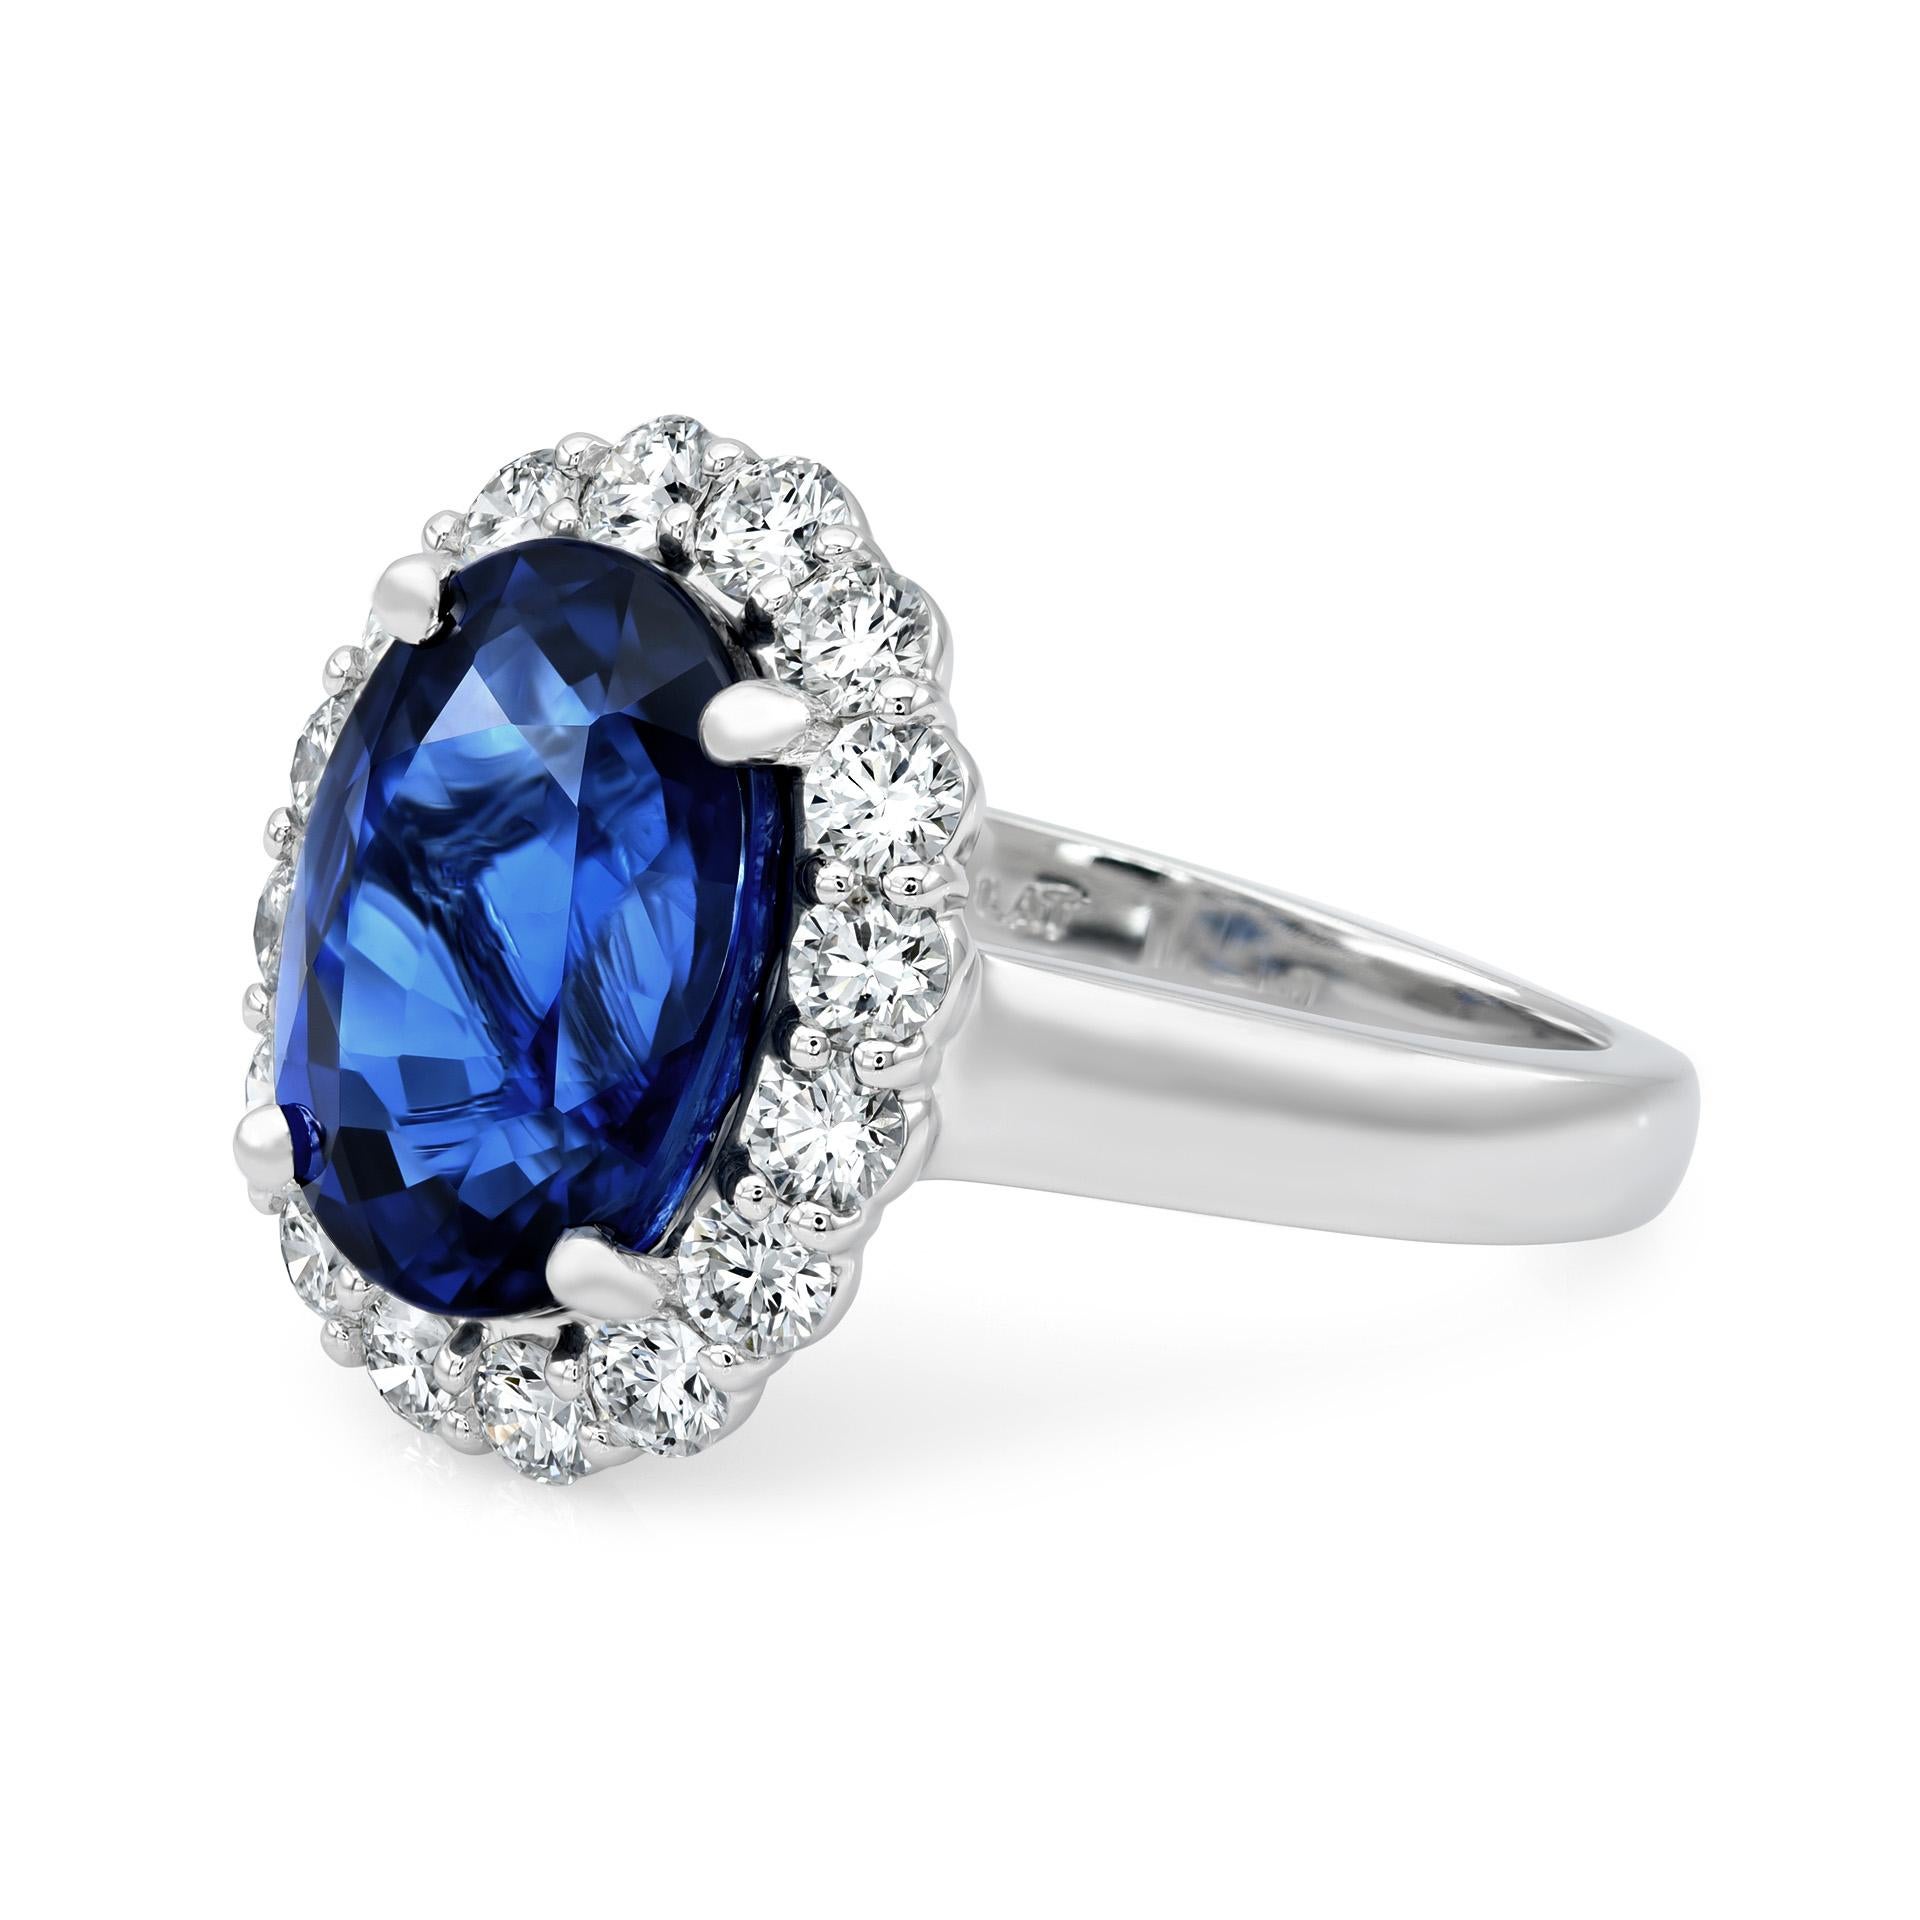 Découvrez l'incarnation de l'élégance avec notre exquise bague en saphir bleu. Il est orné d'un saphir bleu naturel de 7,03 carats provenant de Nature Lanka, délicatement serti dans un anneau de platine orné de 1,05 carats de diamants éblouissants.